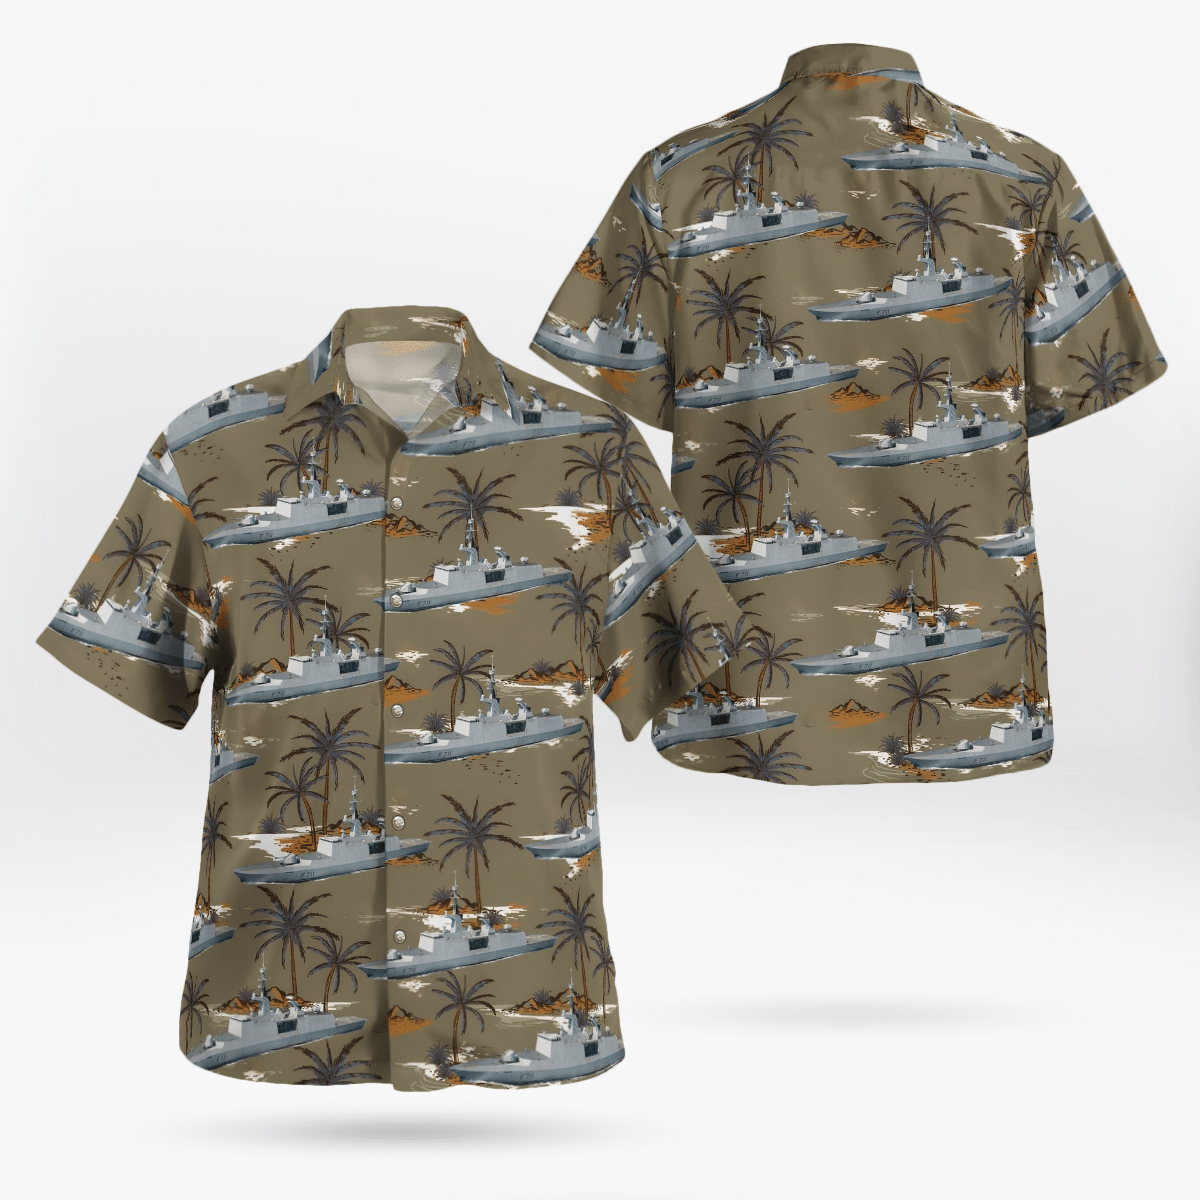 You won't regret buying these Aloha Shirt 198